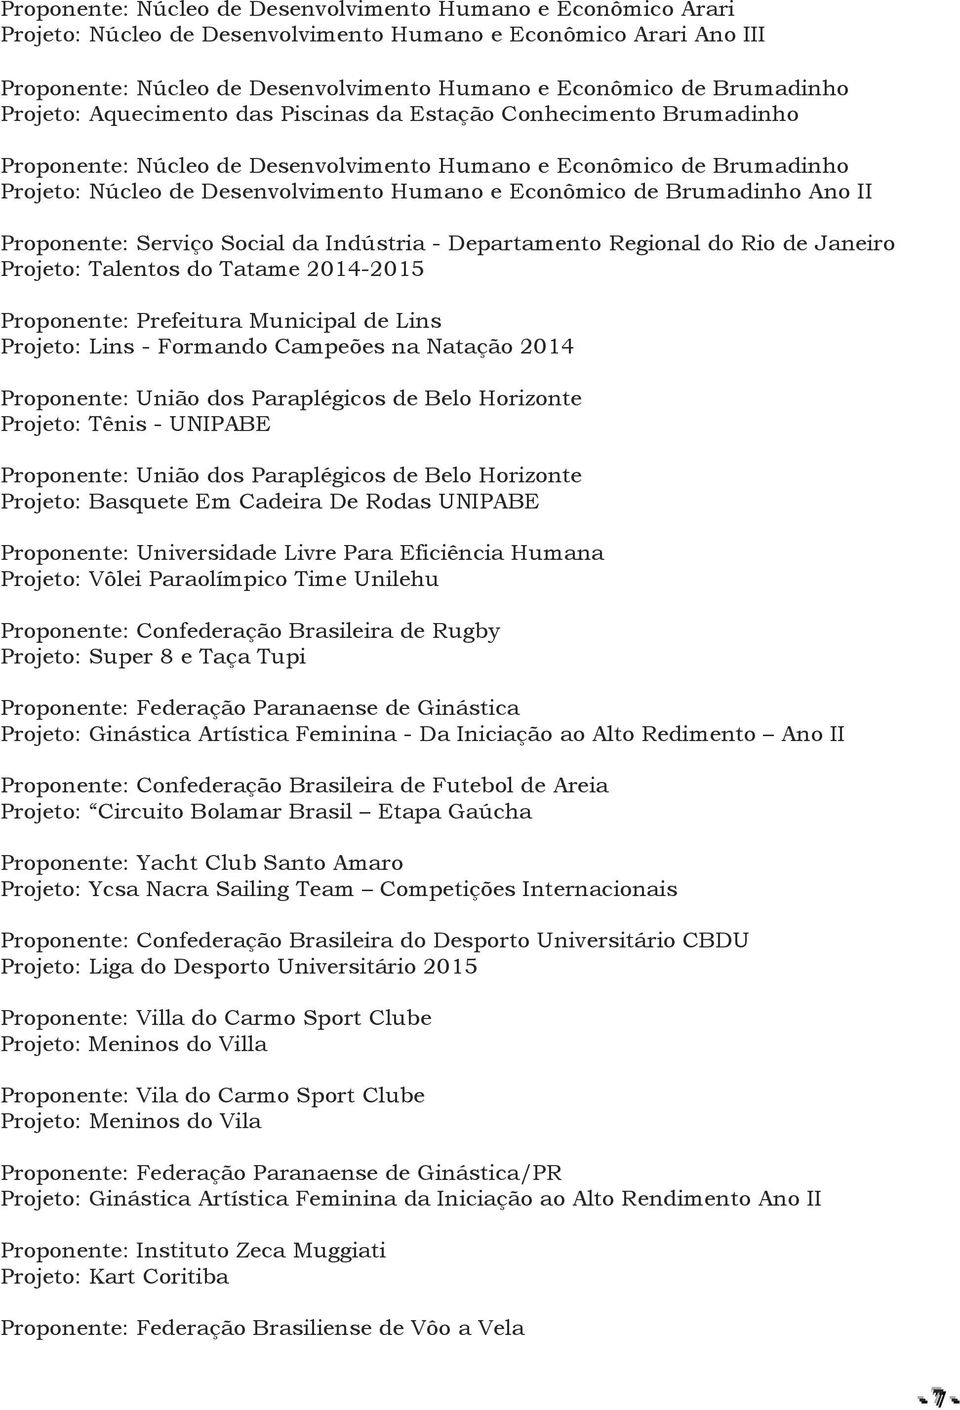 Econômico de Brumadinho Ano II Proponente: Serviço Social da Indústria - Departamento Regional do Rio de Janeiro Projeto: Talentos do Tatame 2014-2015 Proponente: Prefeitura Municipal de Lins